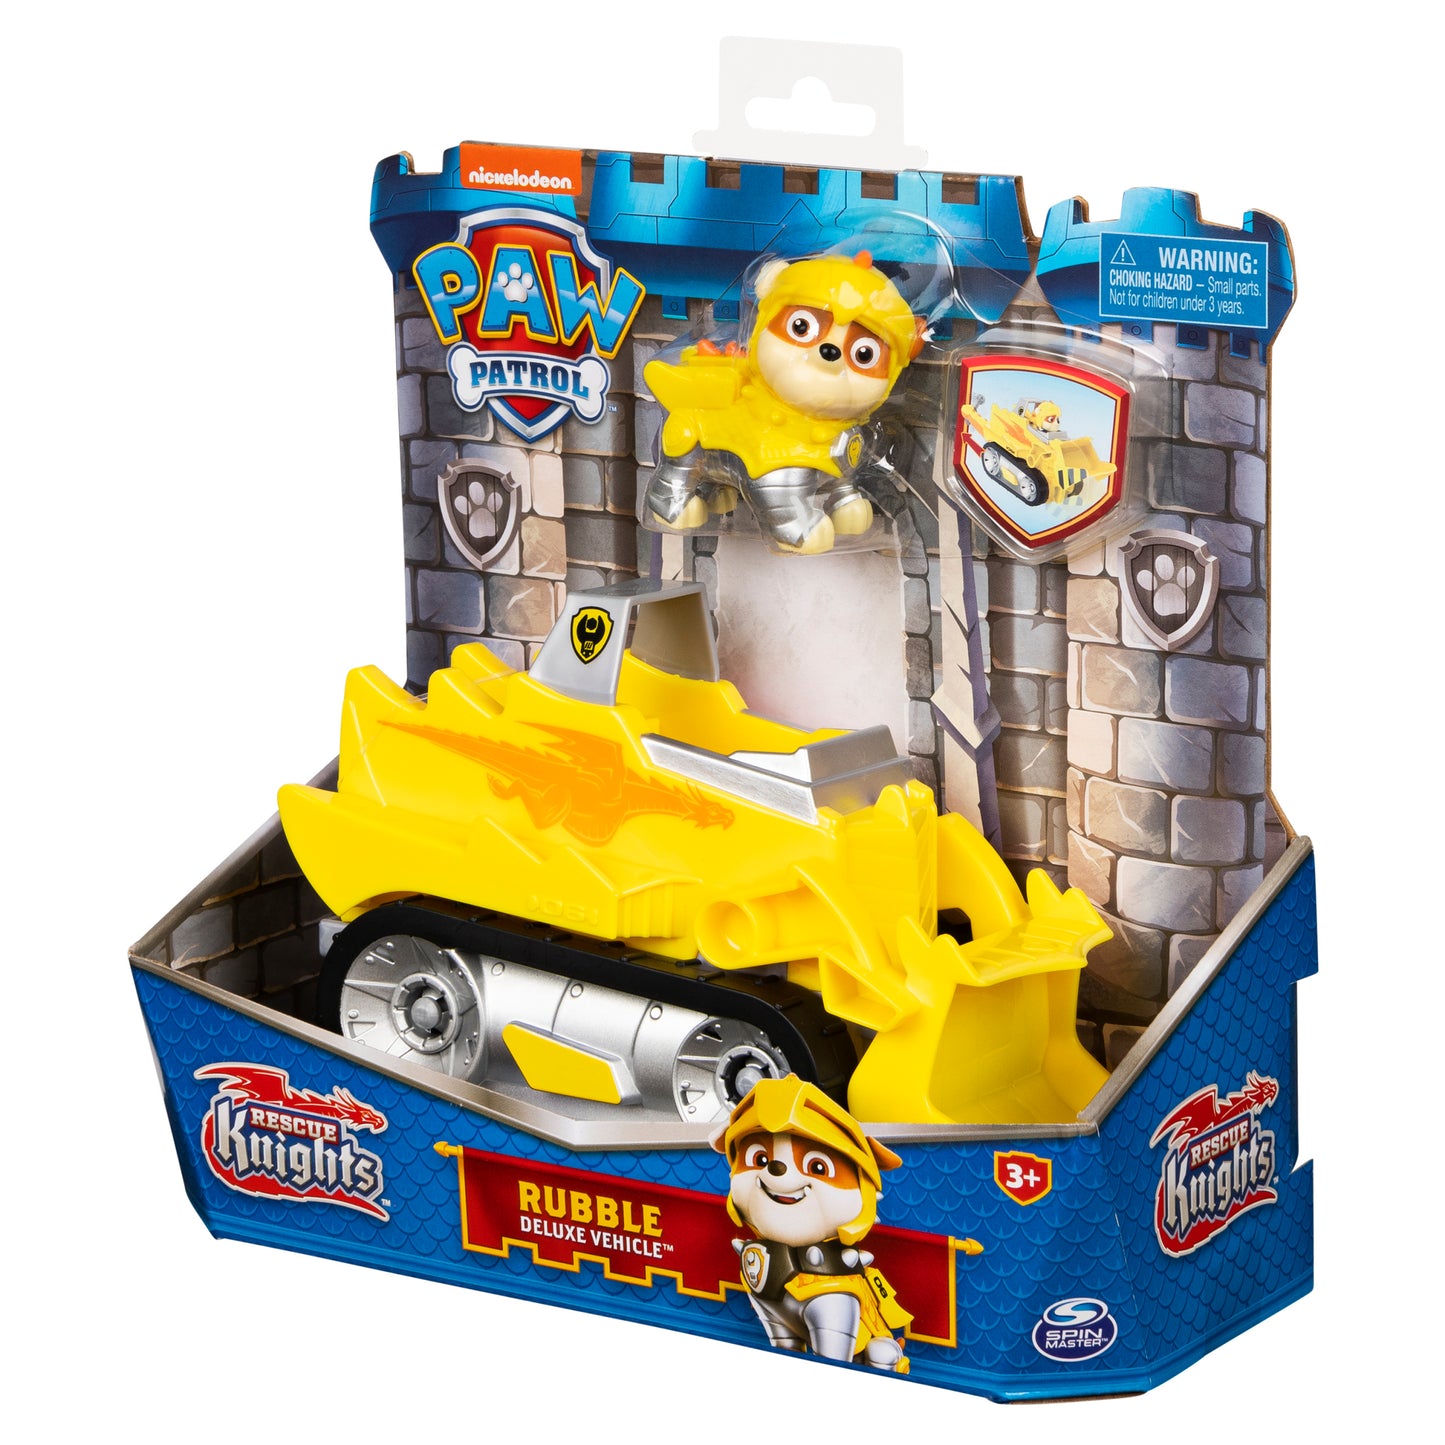 PAW PatrolVoiture transformable, Rescue Knights Rubble Toy Car avec figurine à collectionner Action Figure, Enfants Jouets pour les 3 ans et plus